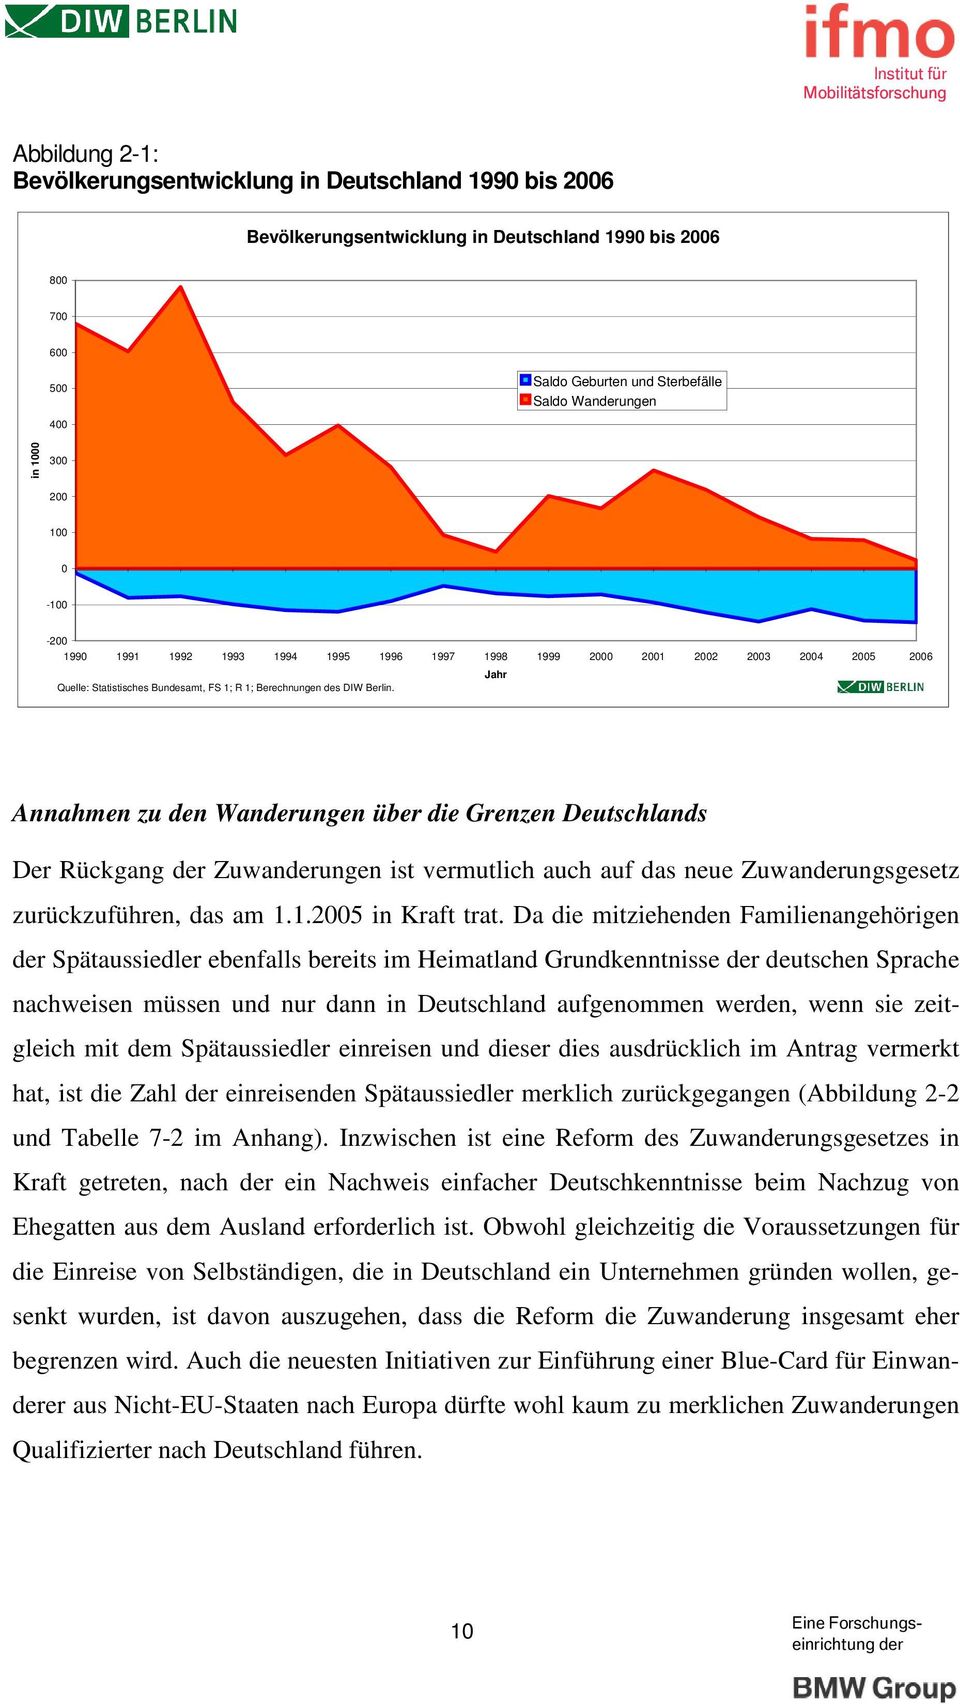 Annahmen zu den Wanungen über die Grenzen Deutschlands Der Rückgang Zuwanungen ist vermutlich auch auf das neue Zuwanungsgesetz zurückzuführen, das am 1.1.2005 in Kraft trat.